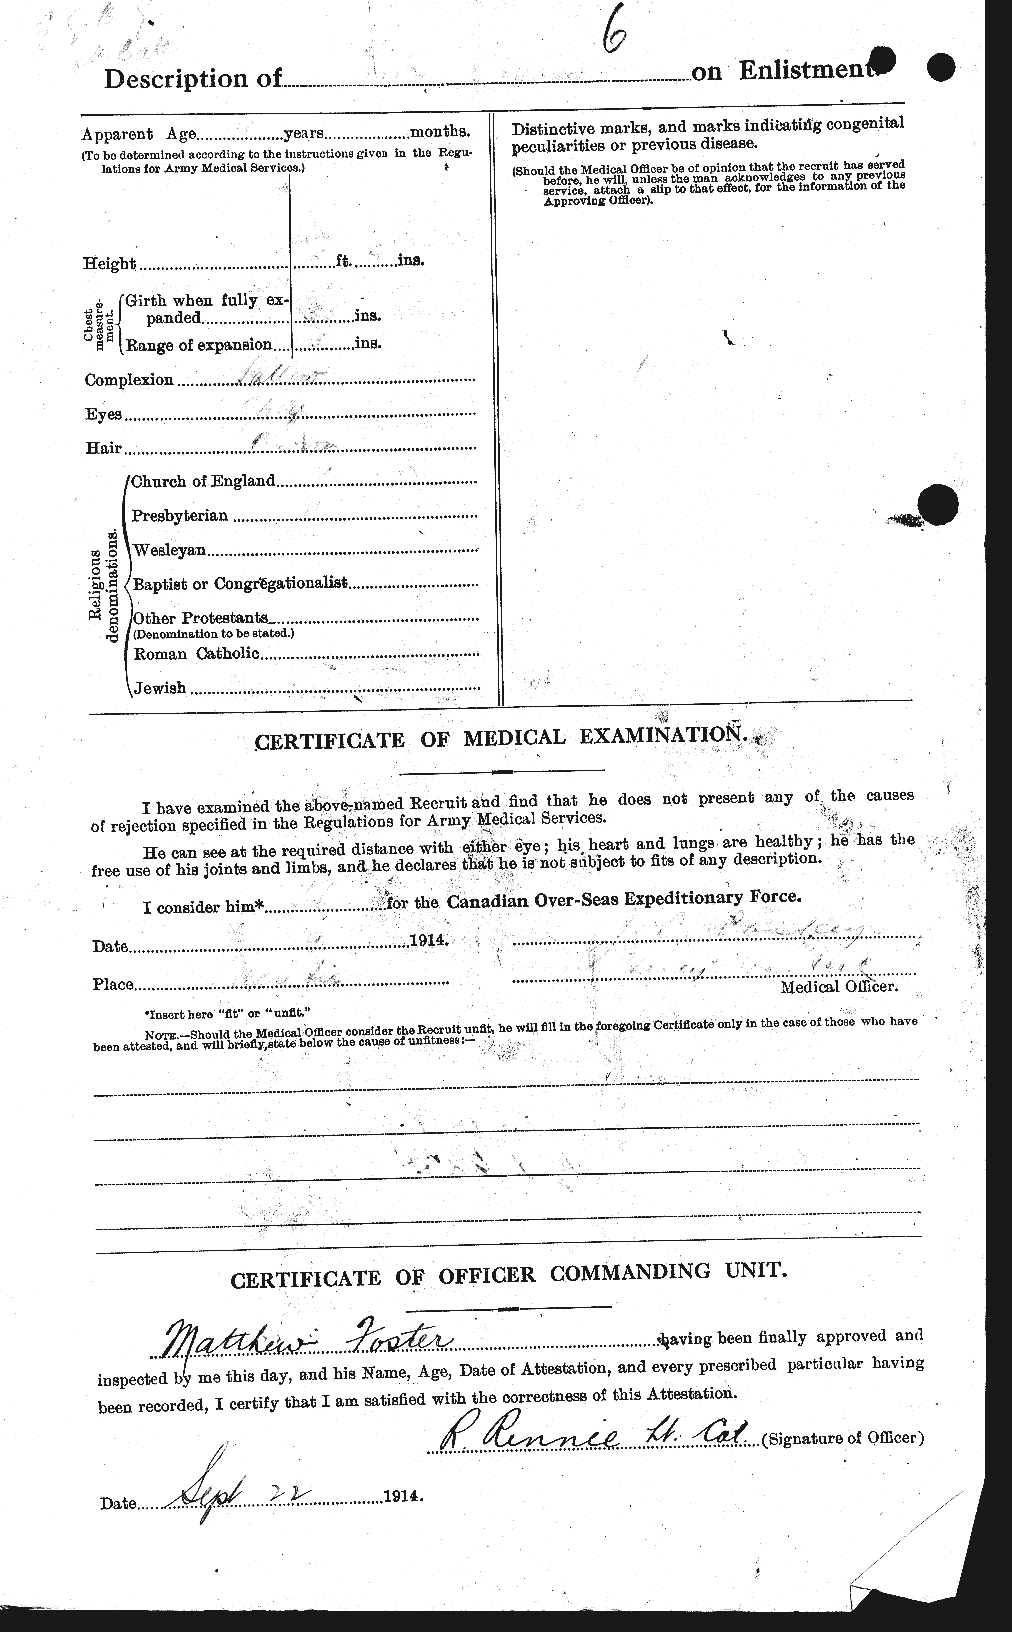 Dossiers du Personnel de la Première Guerre mondiale - CEC 333421b